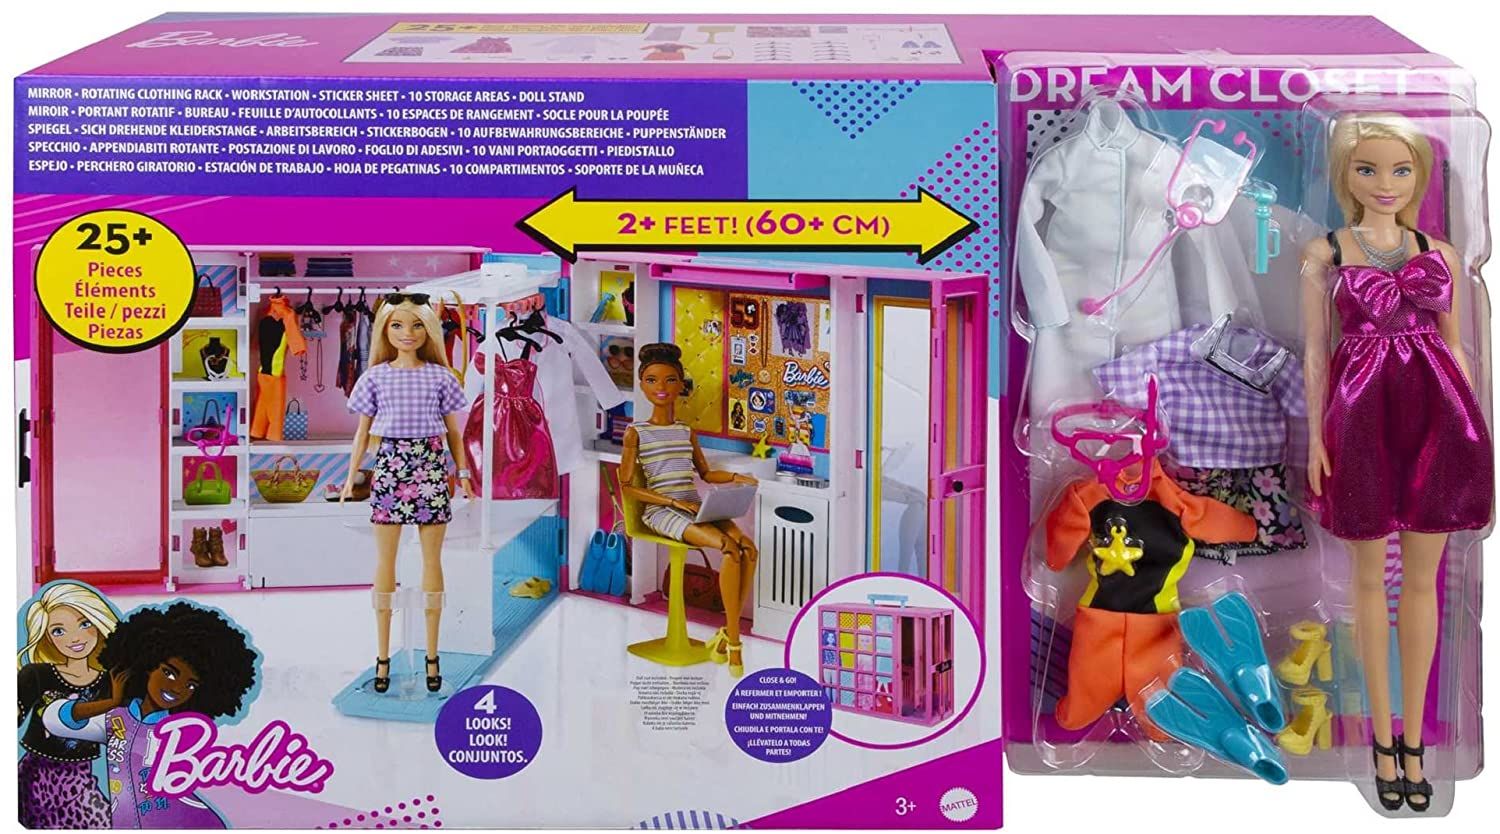 L'armadio dei sogni di Barbie